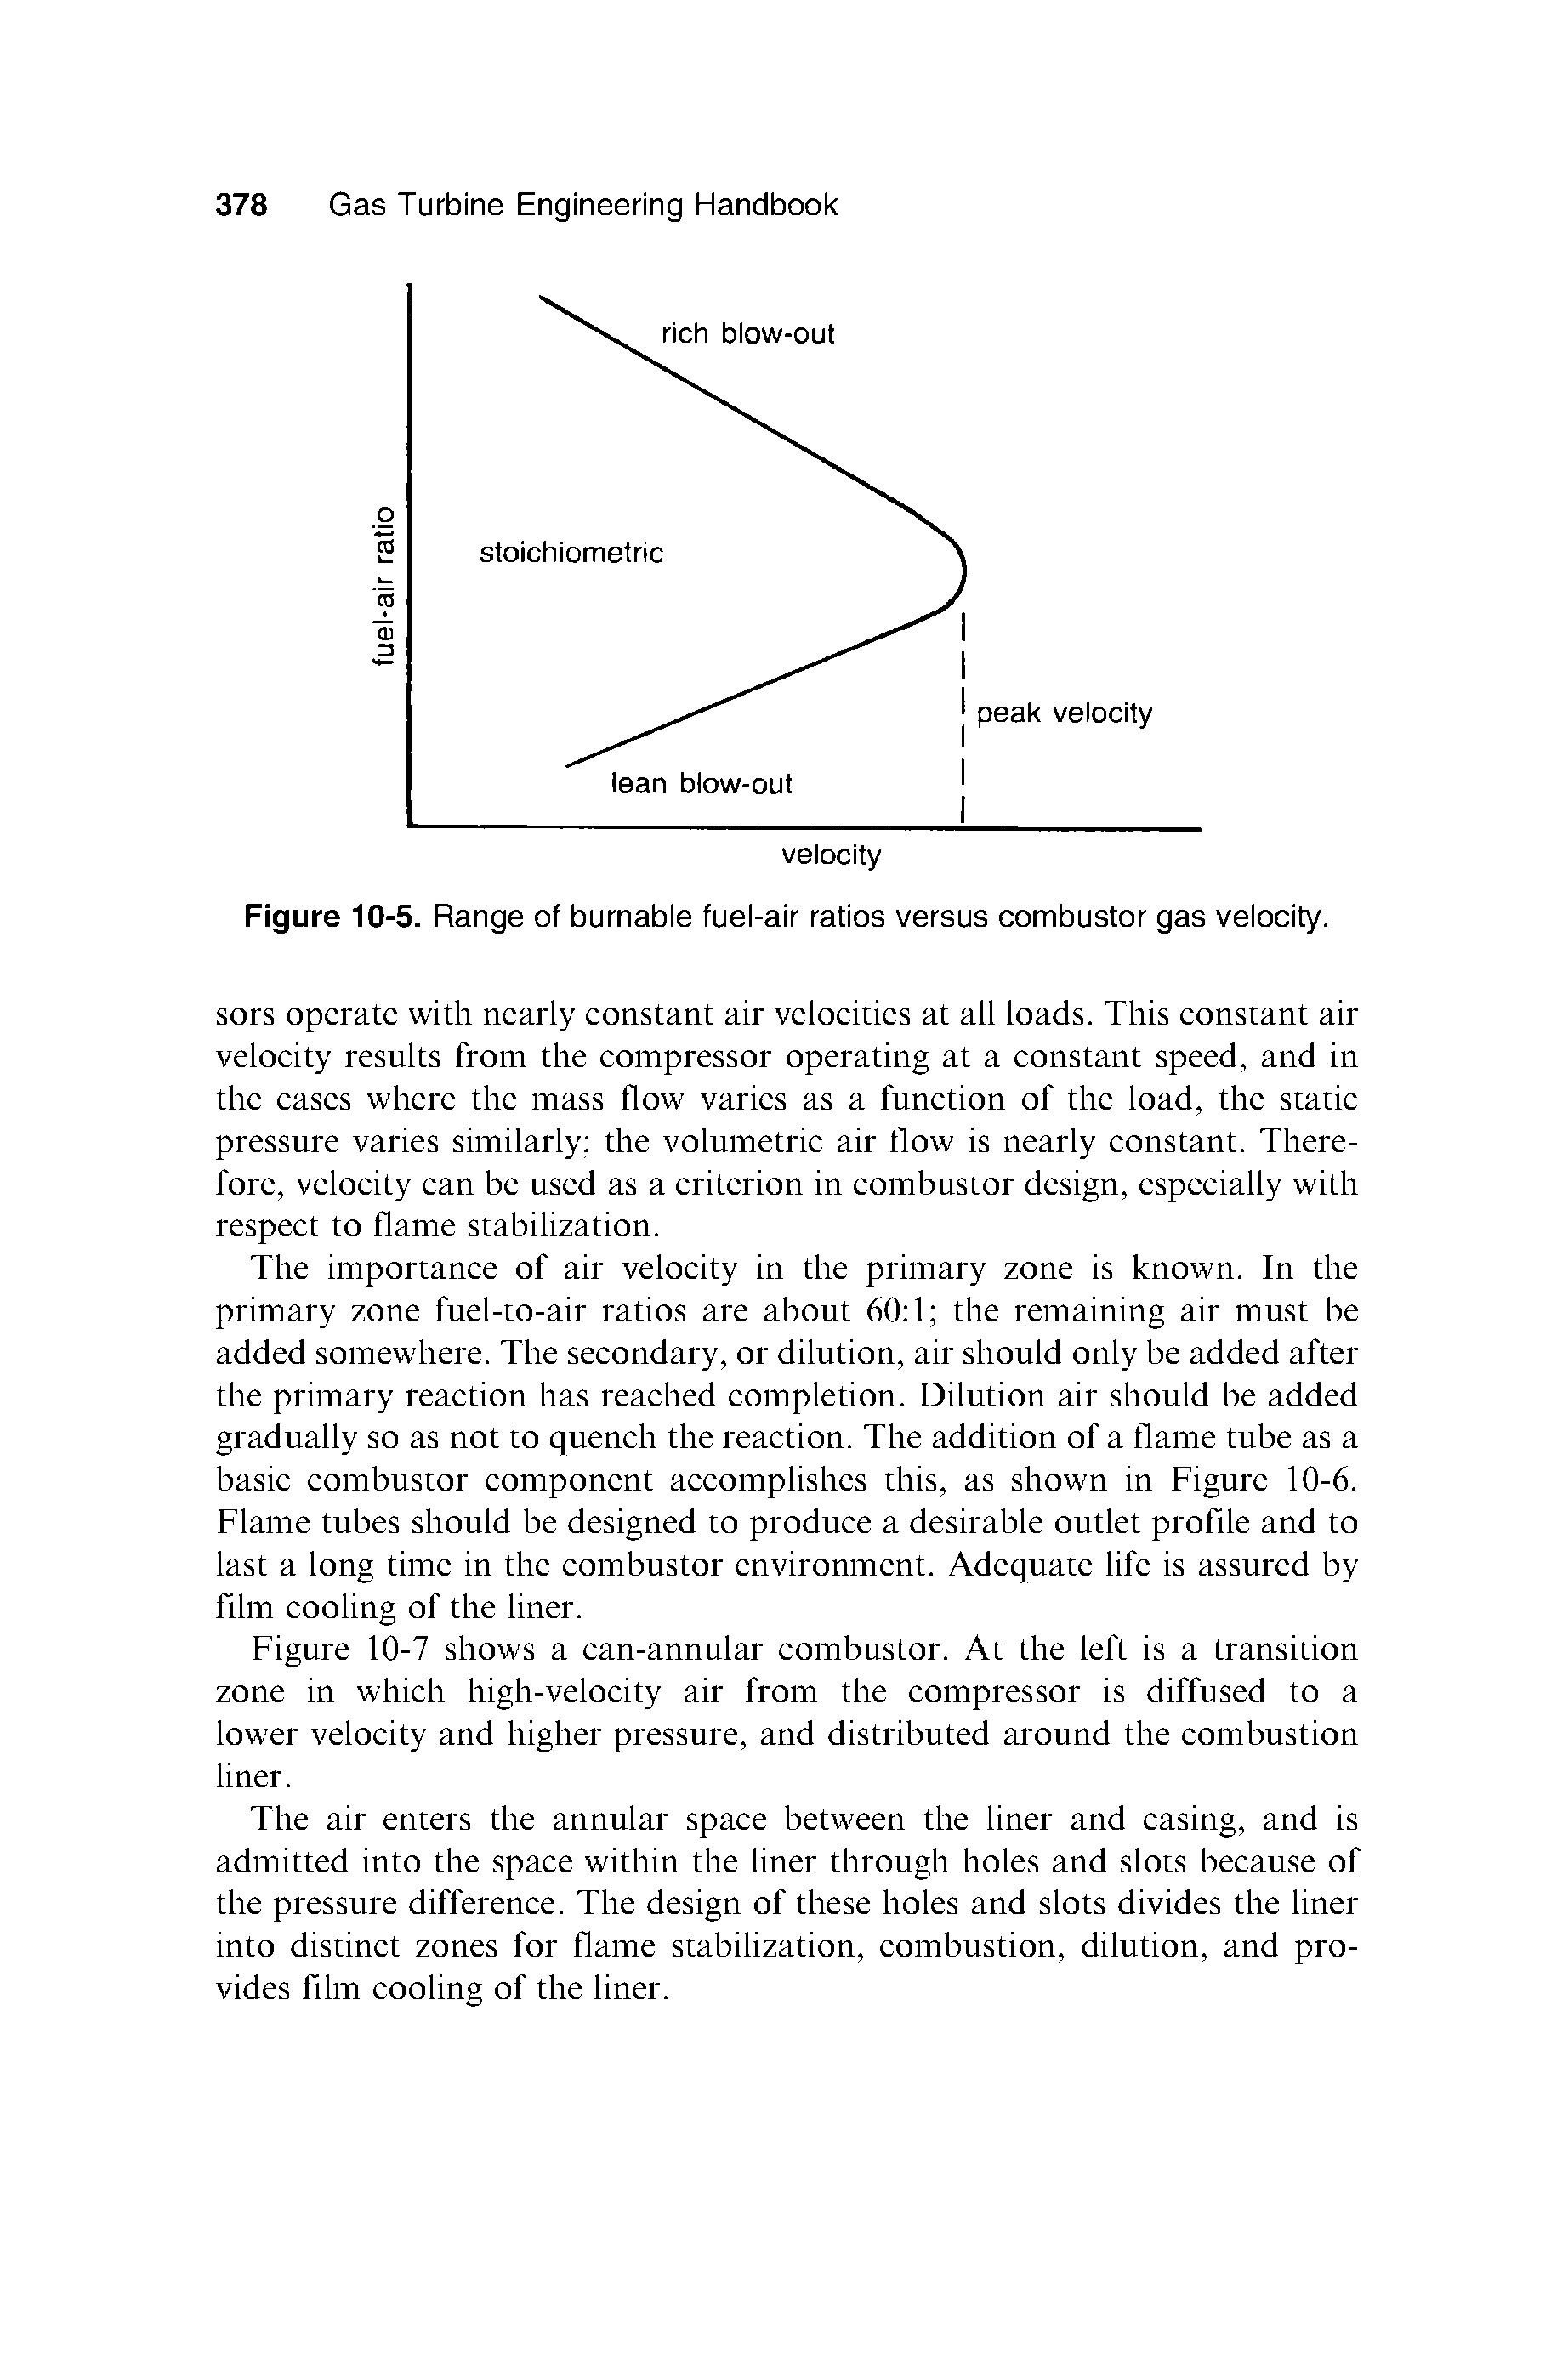 Figure 10-5. Range of burnabie fuei-air ratios versus eombustor gas veioeity.